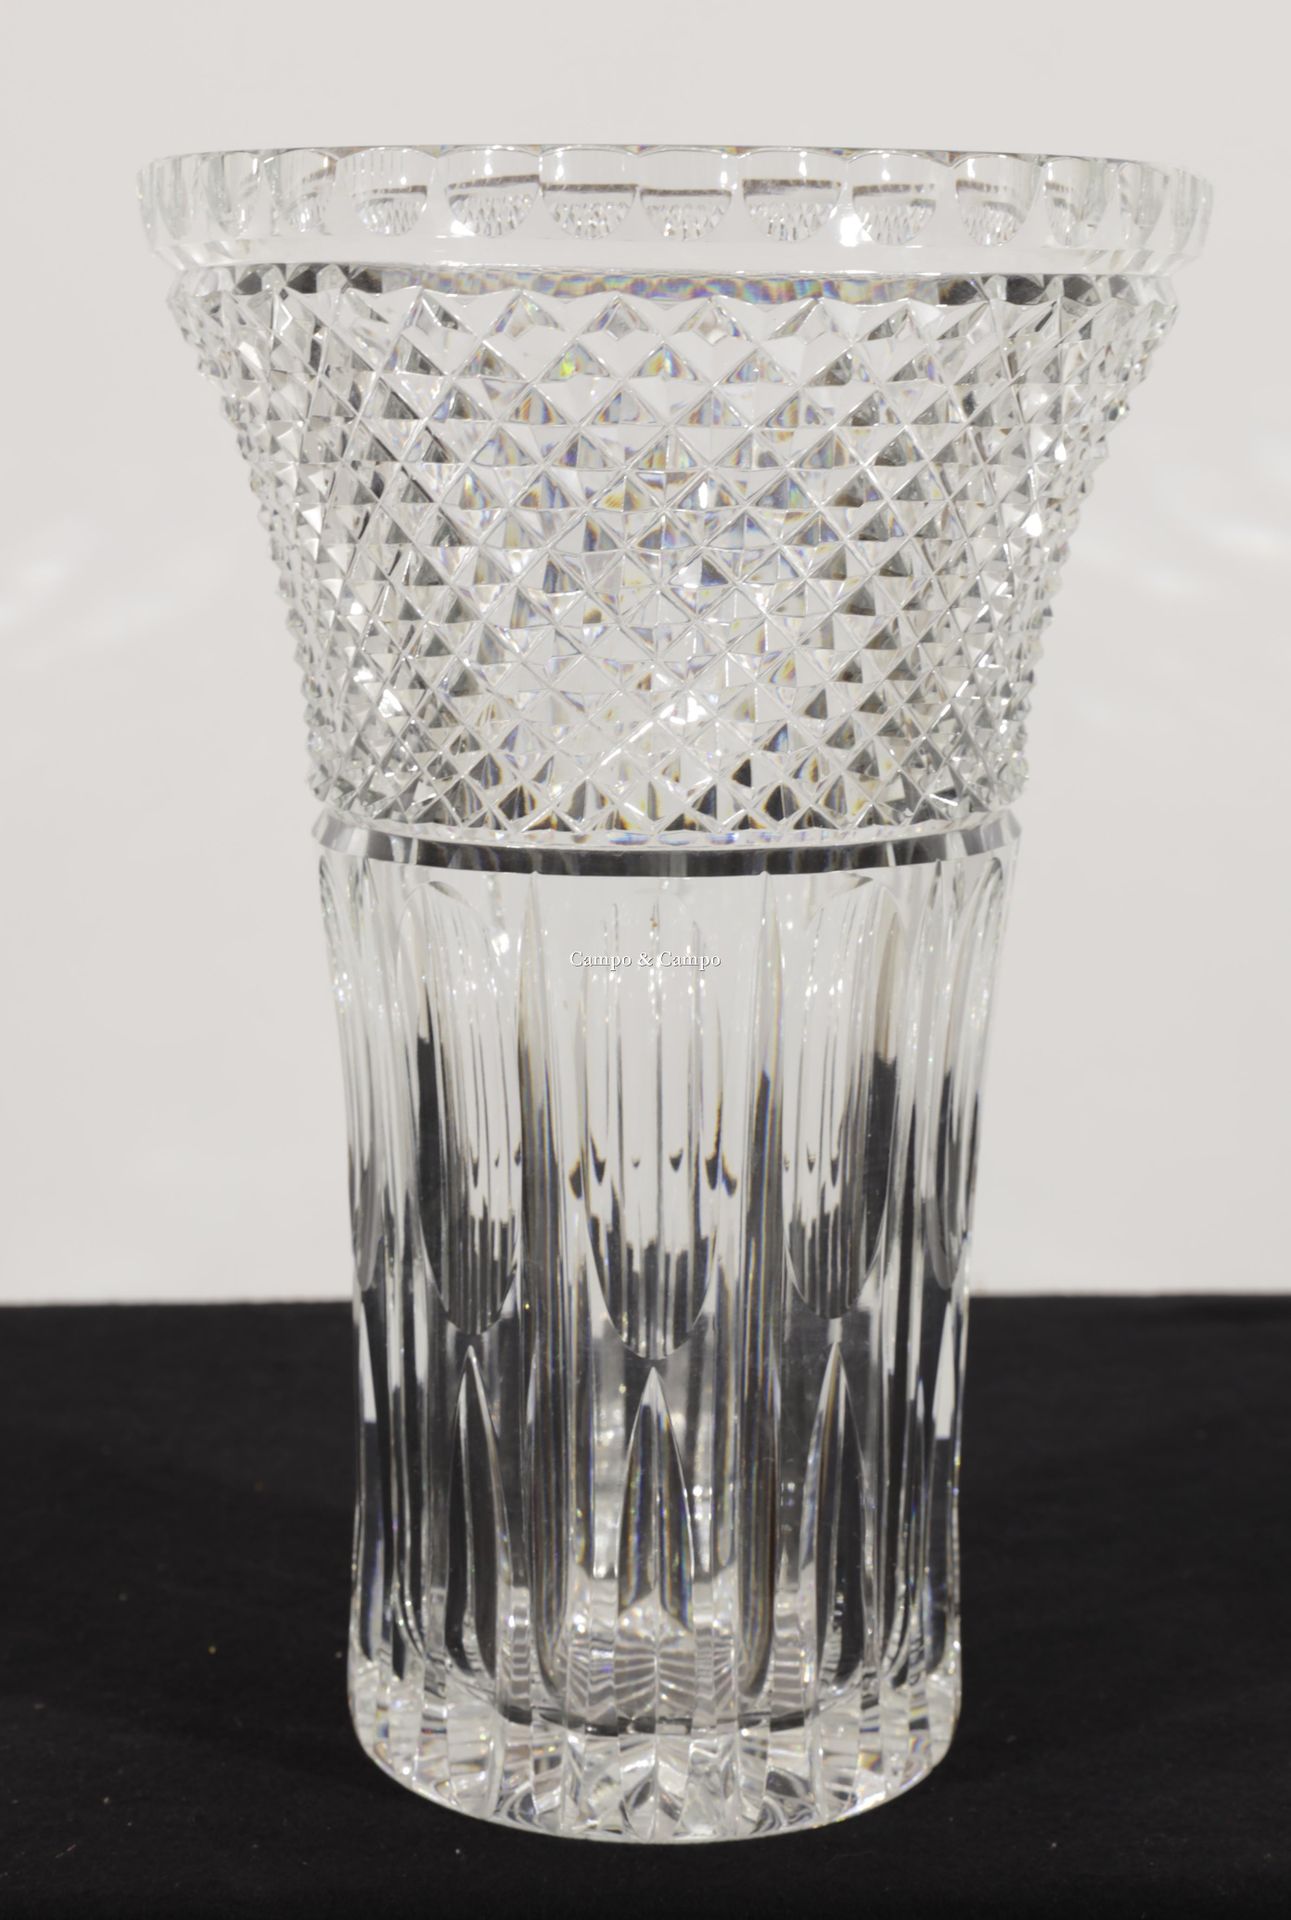 VARIA Clear crystal vase, possibly Bohemian crystal
Vaas van helder kristal, mog&hellip;